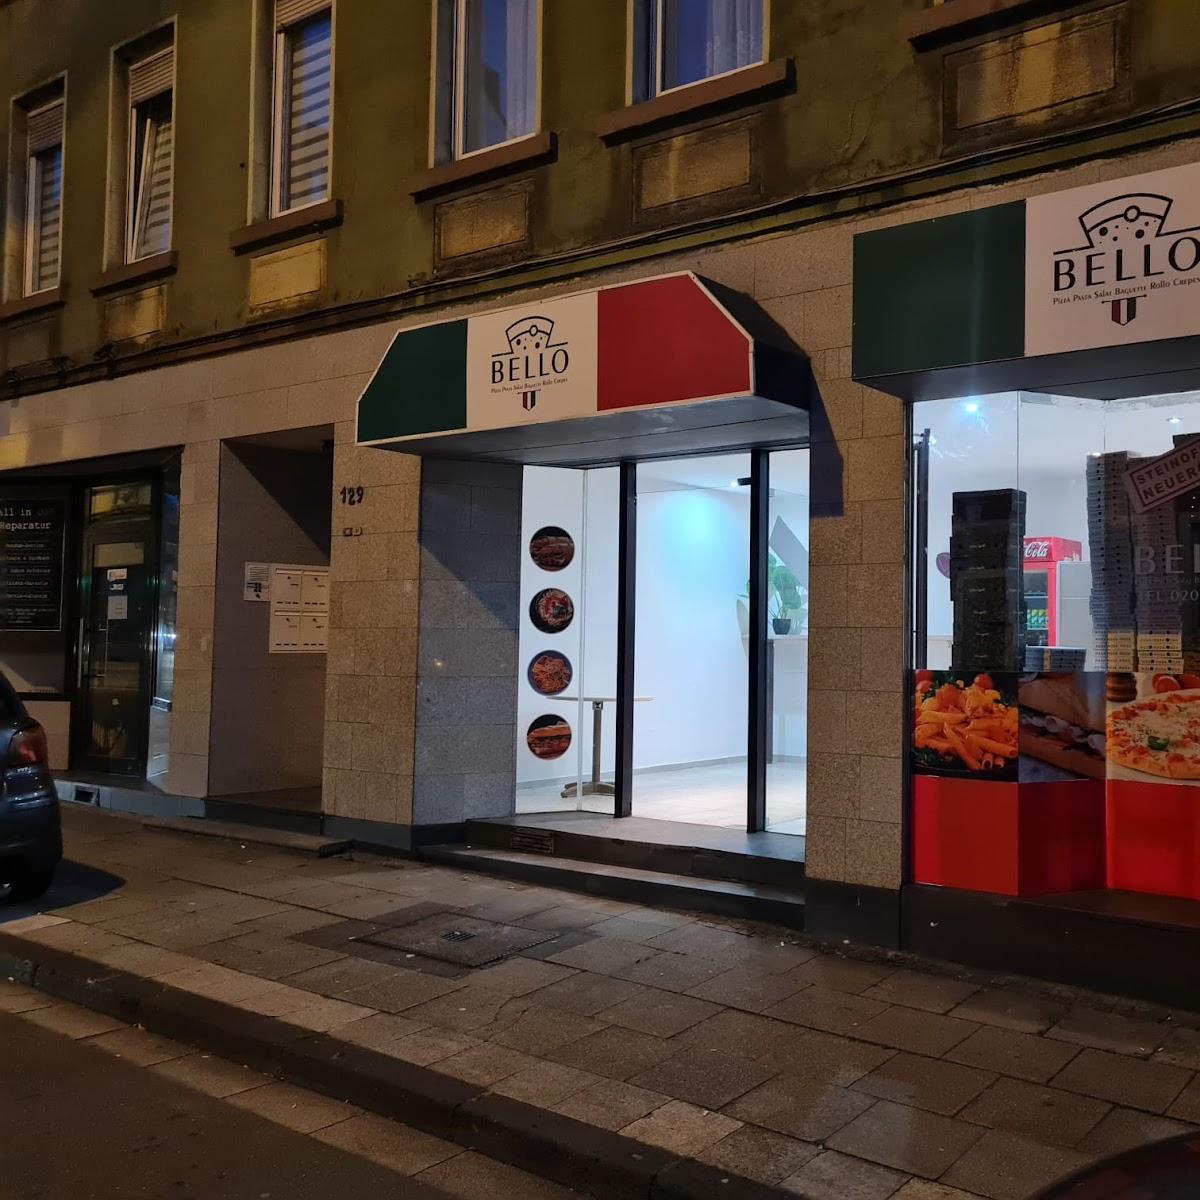 Restaurant "Bello Pizzeria" in Essen